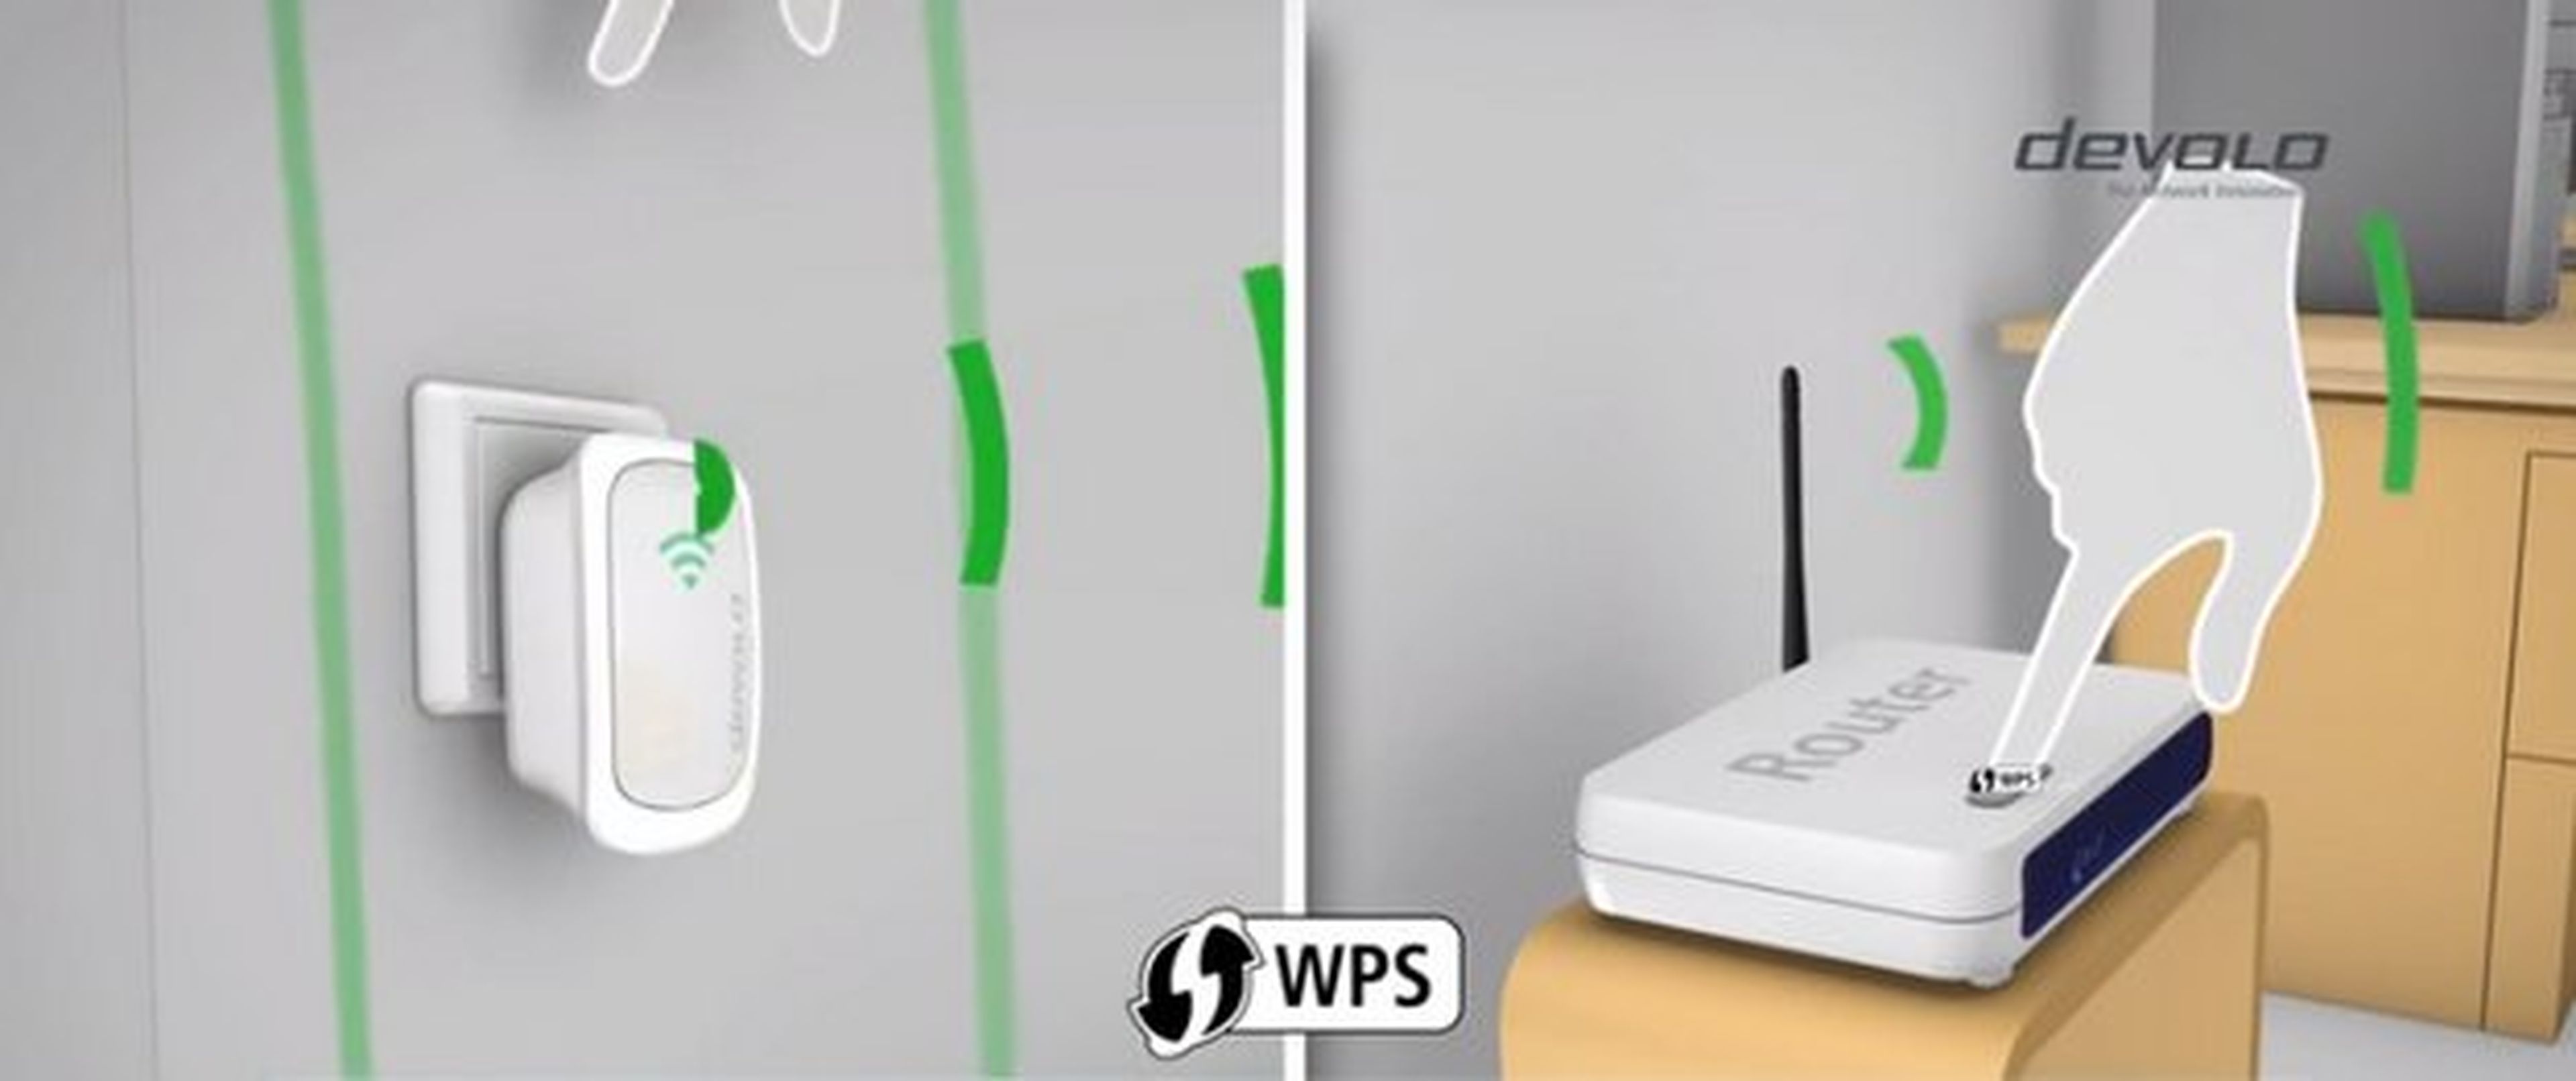 Cómo usar un ROUTER como REPETIDOR WiFi 